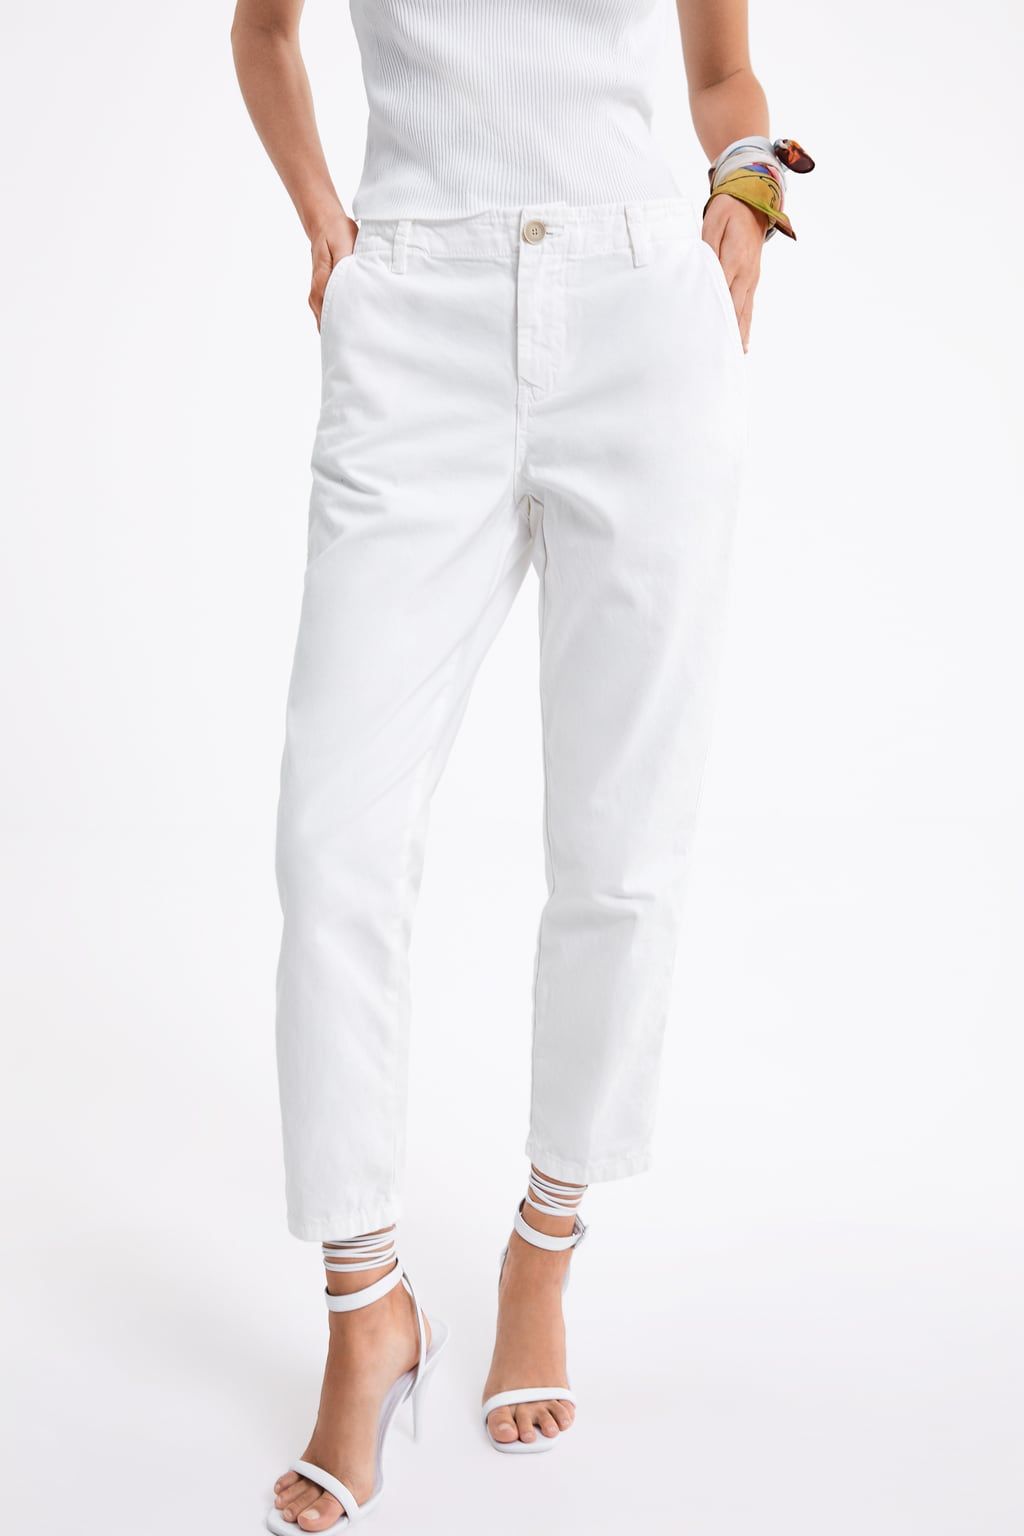 El Pantalon Blanco De Zara De 30 Que Es Mitad Vaquero Mitad